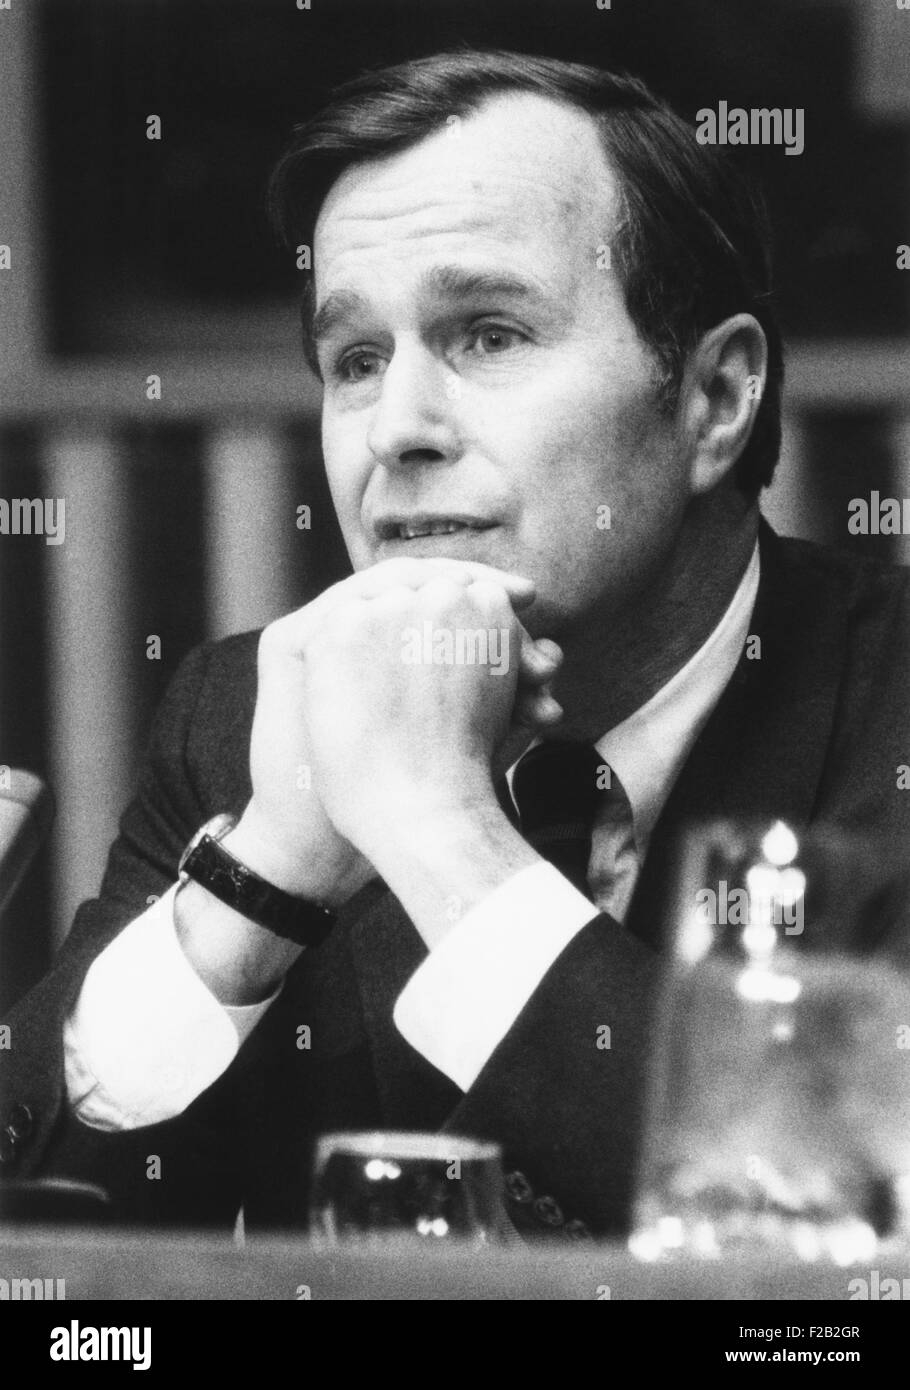 L'ambassadeur de l'ONU, George Bush, a présenté ses lettres de créance au Secrétaire général U Thant. 1 mars, 1971. Bush a perdu sa réélection pour un troisième mandat à la Chambre des représentants du Texas's 7ème arrondissement en 1970, et a été nommé Ambassadeur de l'ONU par le président Richard Nixon. CSU (2015  7 343) Banque D'Images